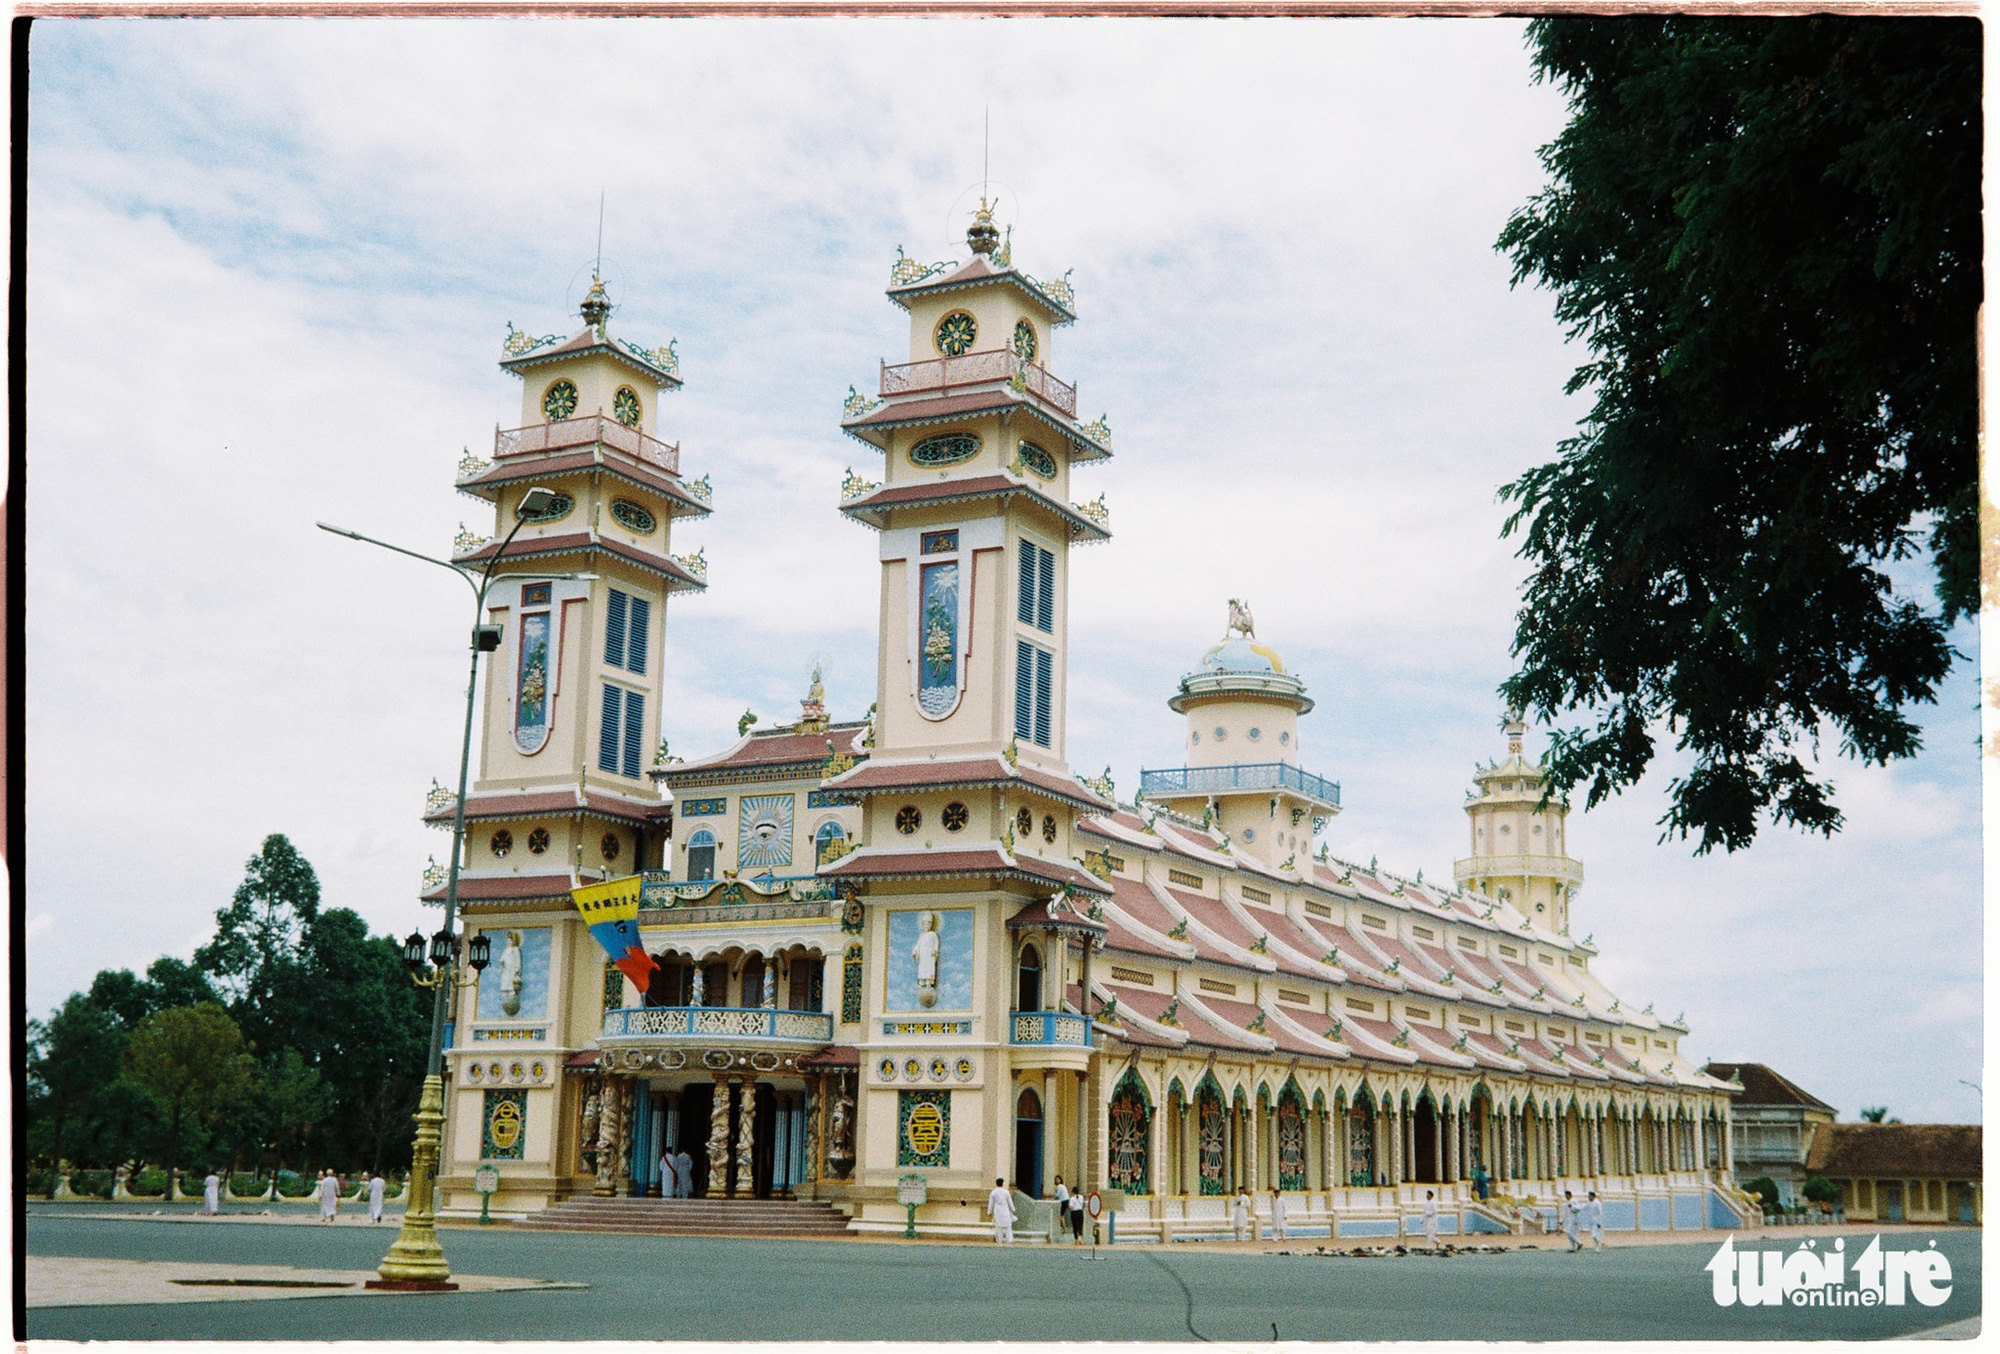 Tay Ninh: A gem hidden from Vietnam’s tourist trail